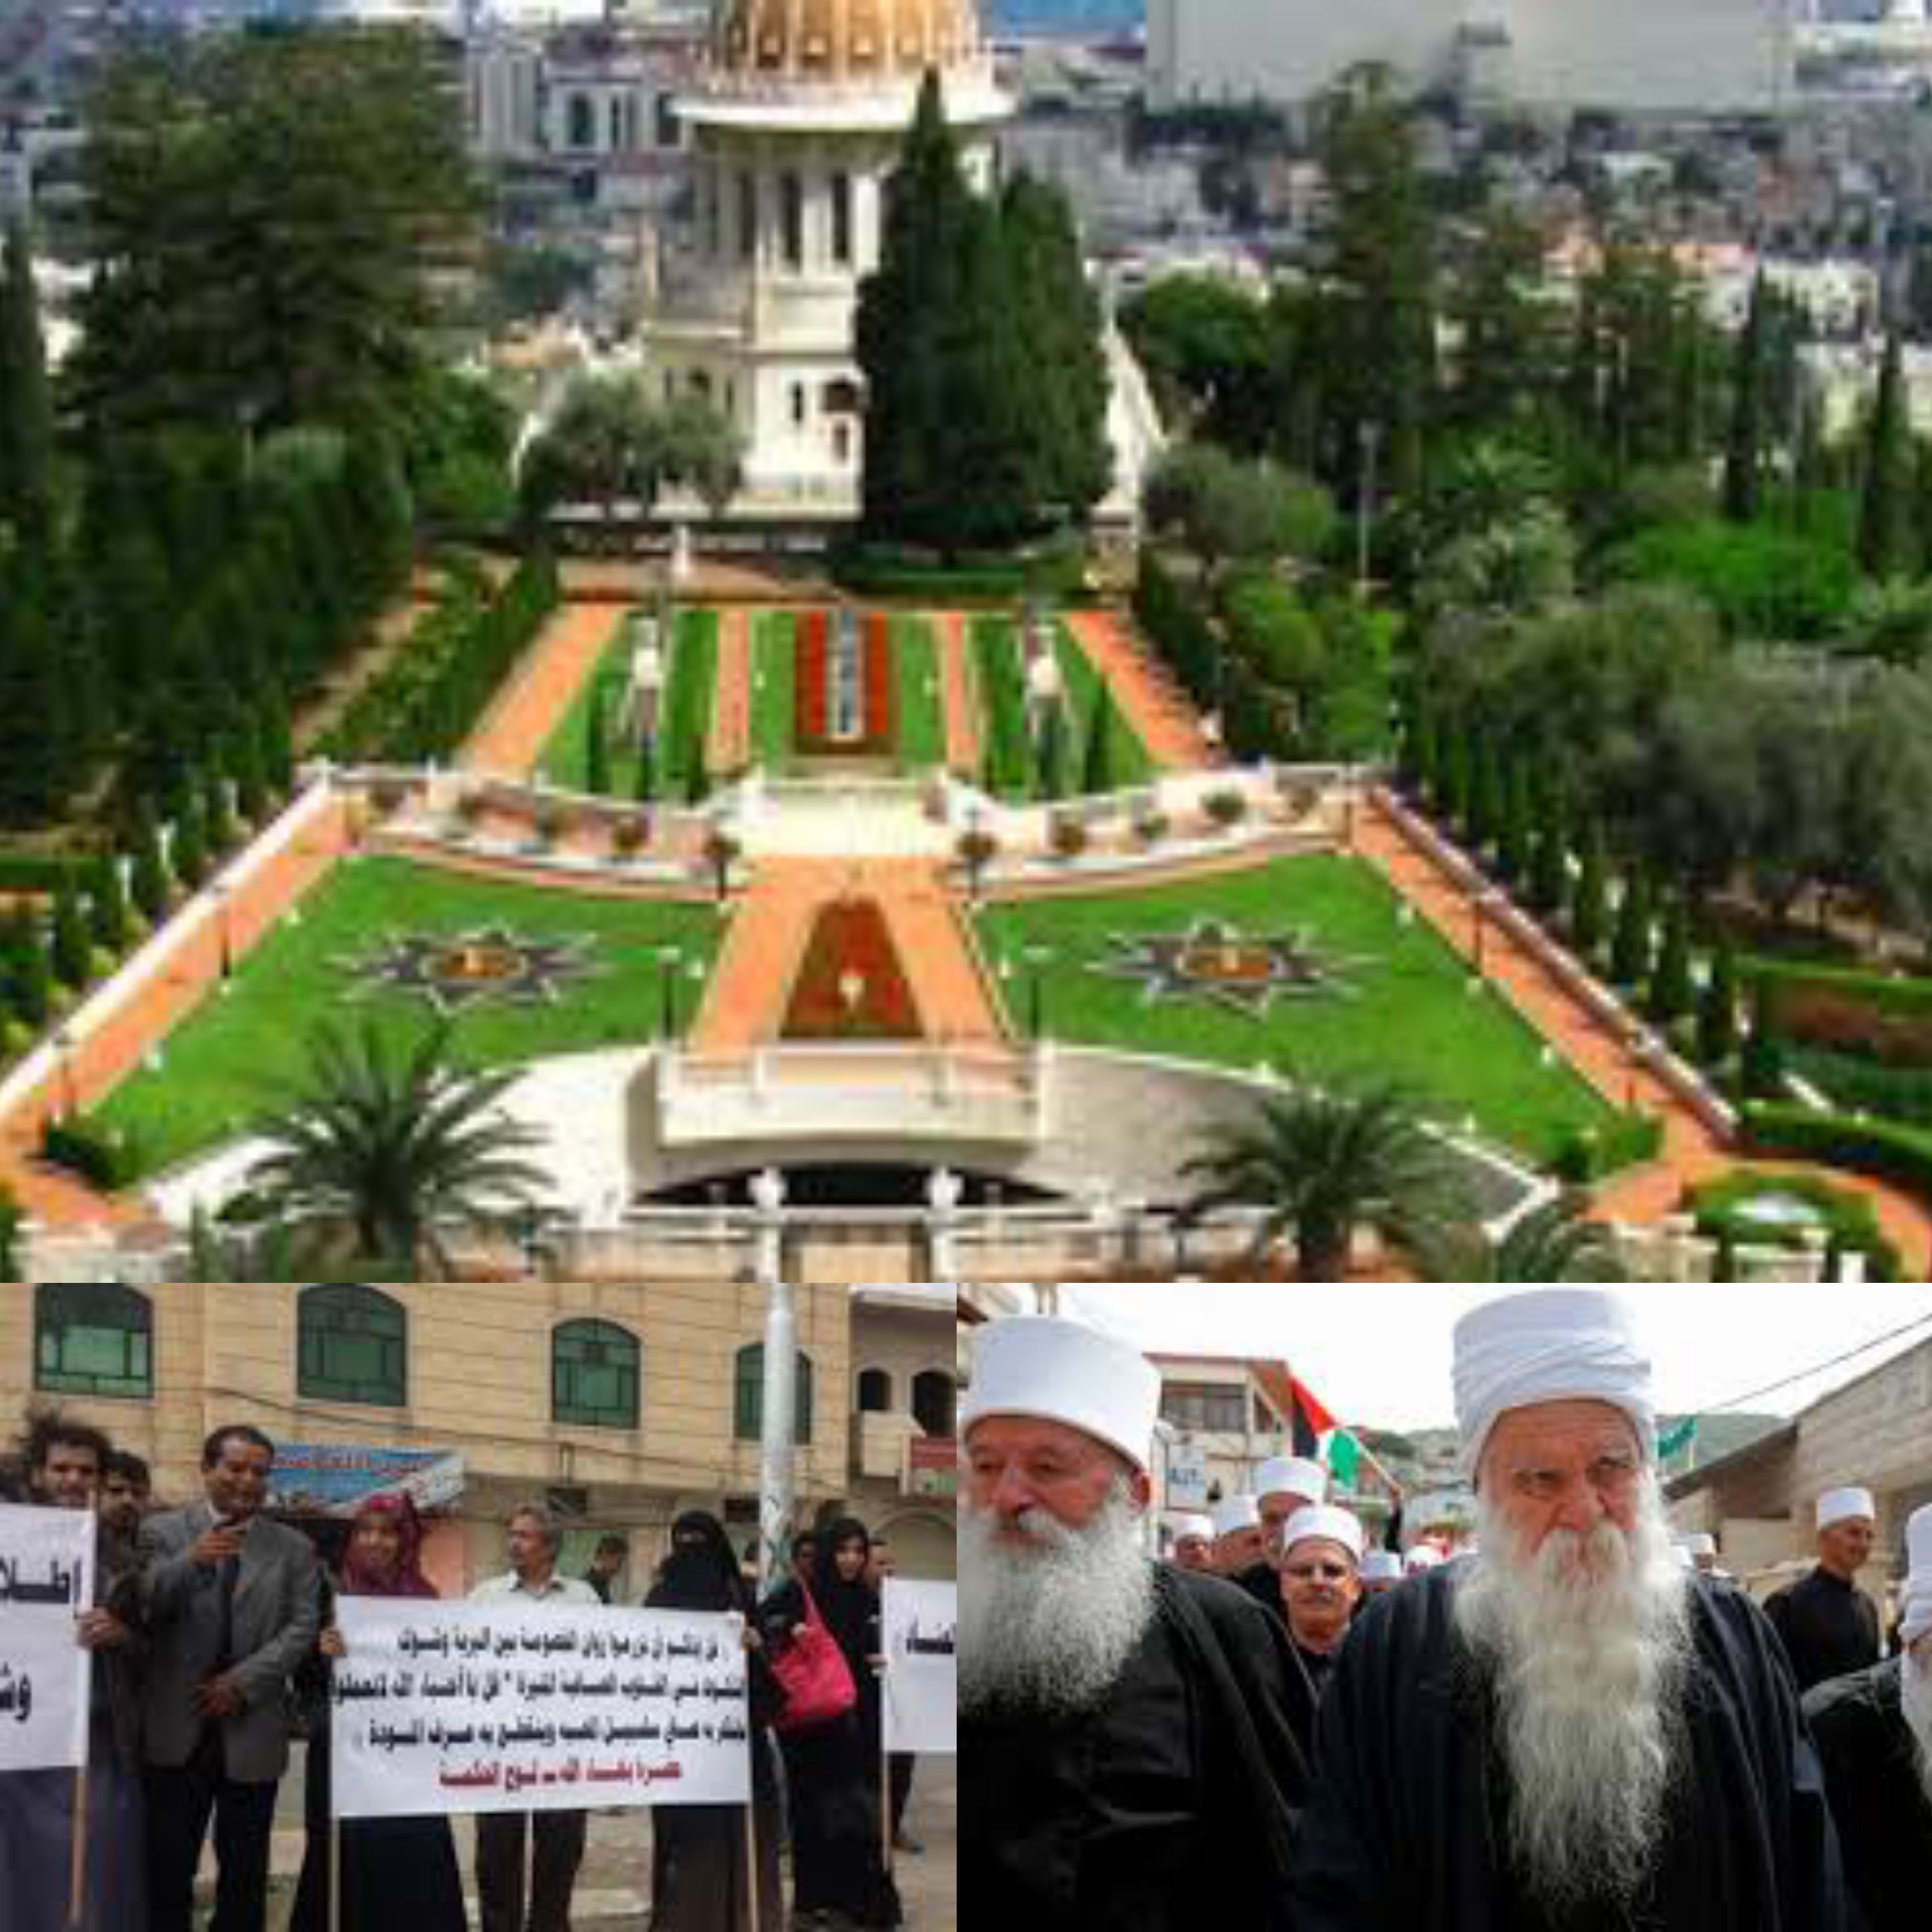 بينهم من دول عربية واسلامية البهائيون من أنحاء العالم يجتمعون في إسرائيل لانتخاب قيادتهم العالمية